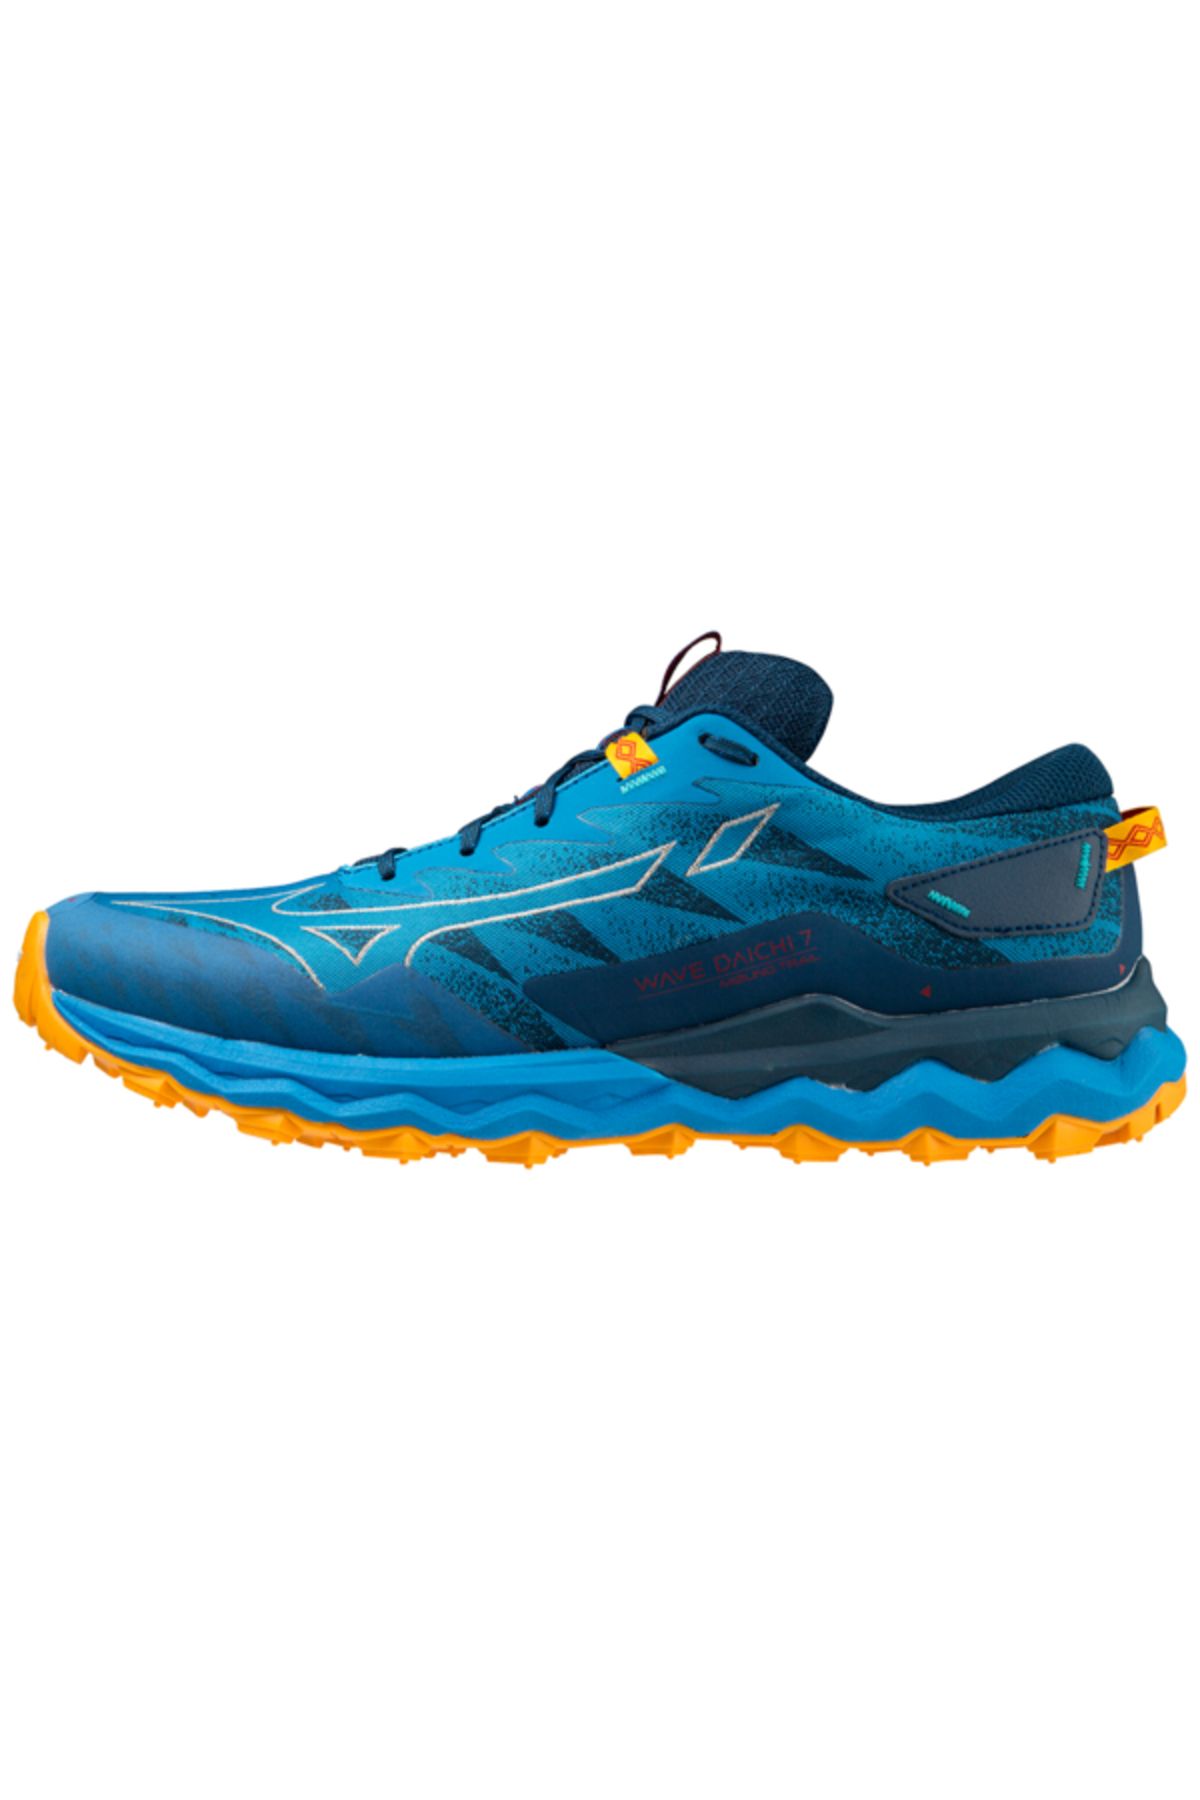 Mizuno Wave Daichi 7 Erkek Koşu Ayakkabısı Mavi